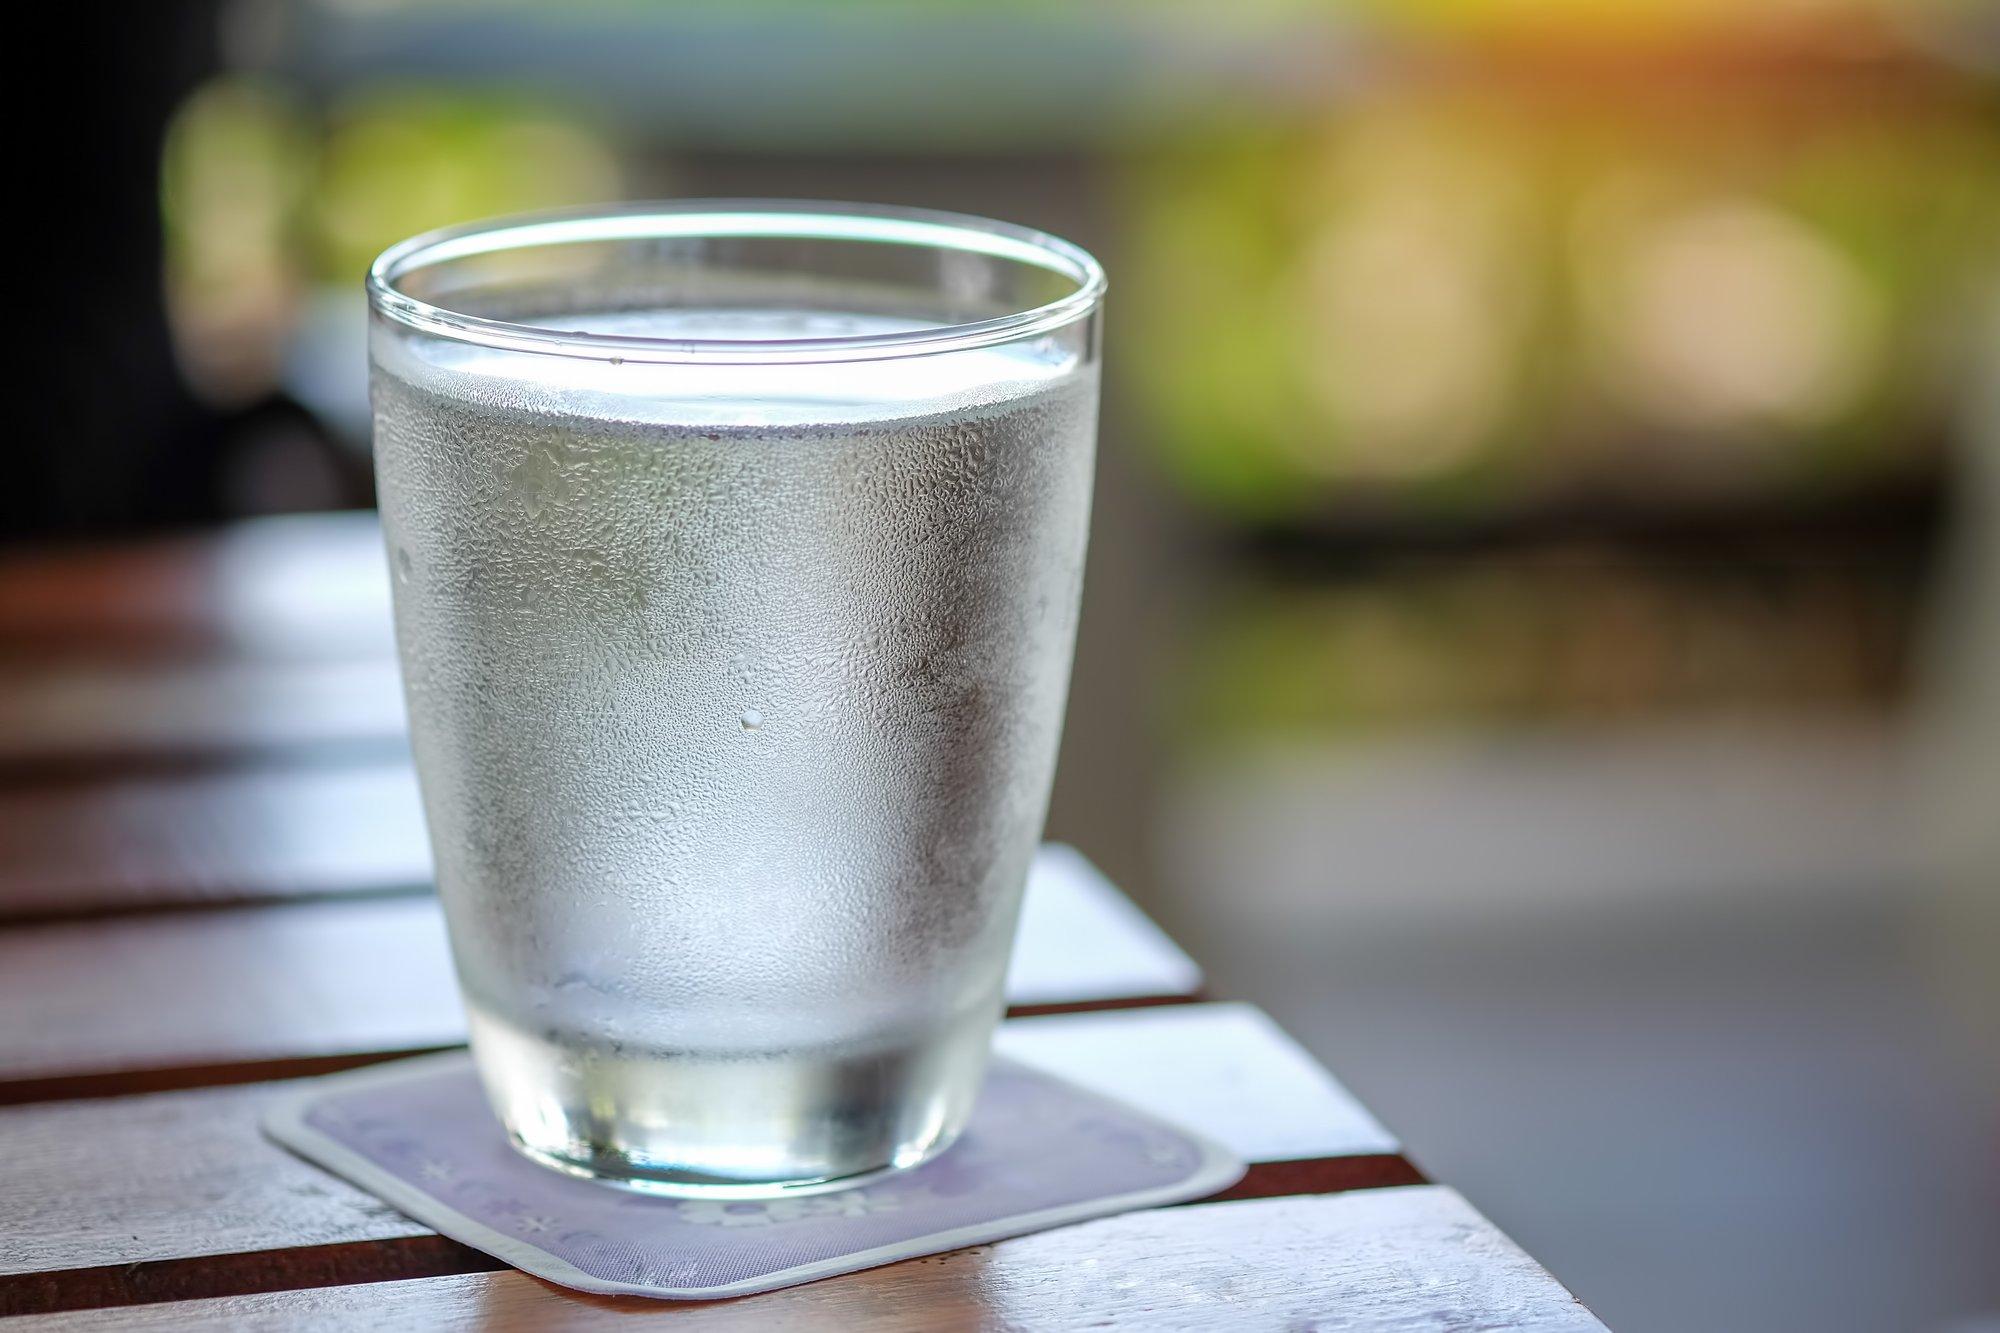 Шотландские ученые: рекомендация выпивать 8 стаканов воды в день была ошибочной